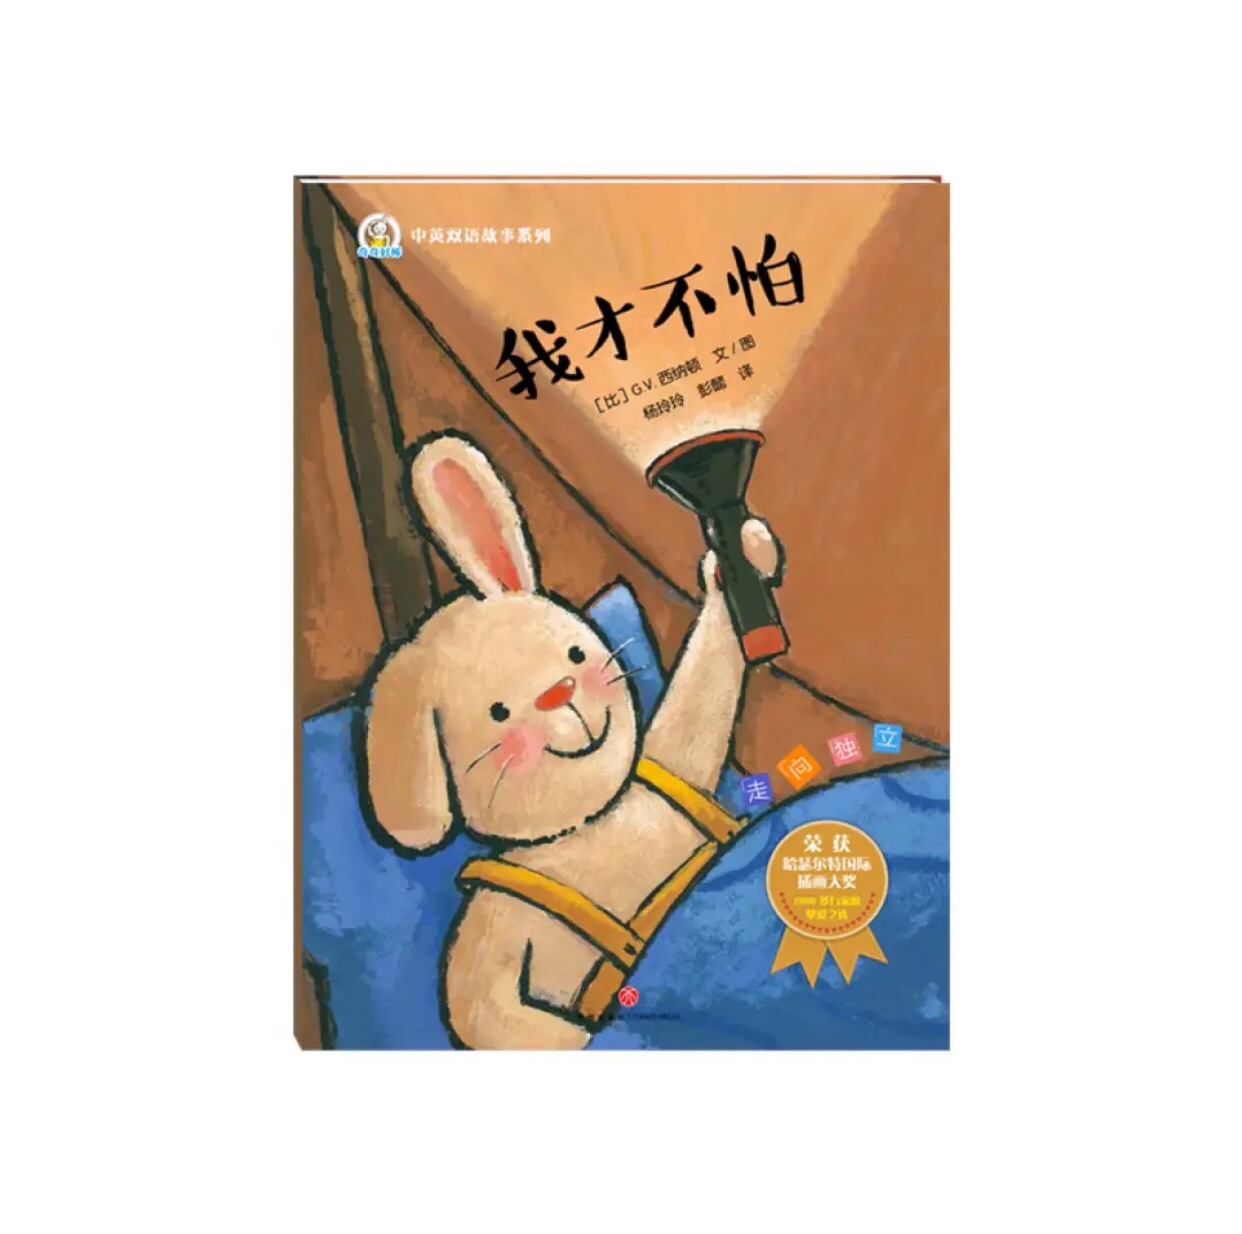 这套书看着就很呆萌，小兔子动物卡通形象绝对是娃娃最喜欢的，而且内容也就孩子日常展开，非常不错哦/